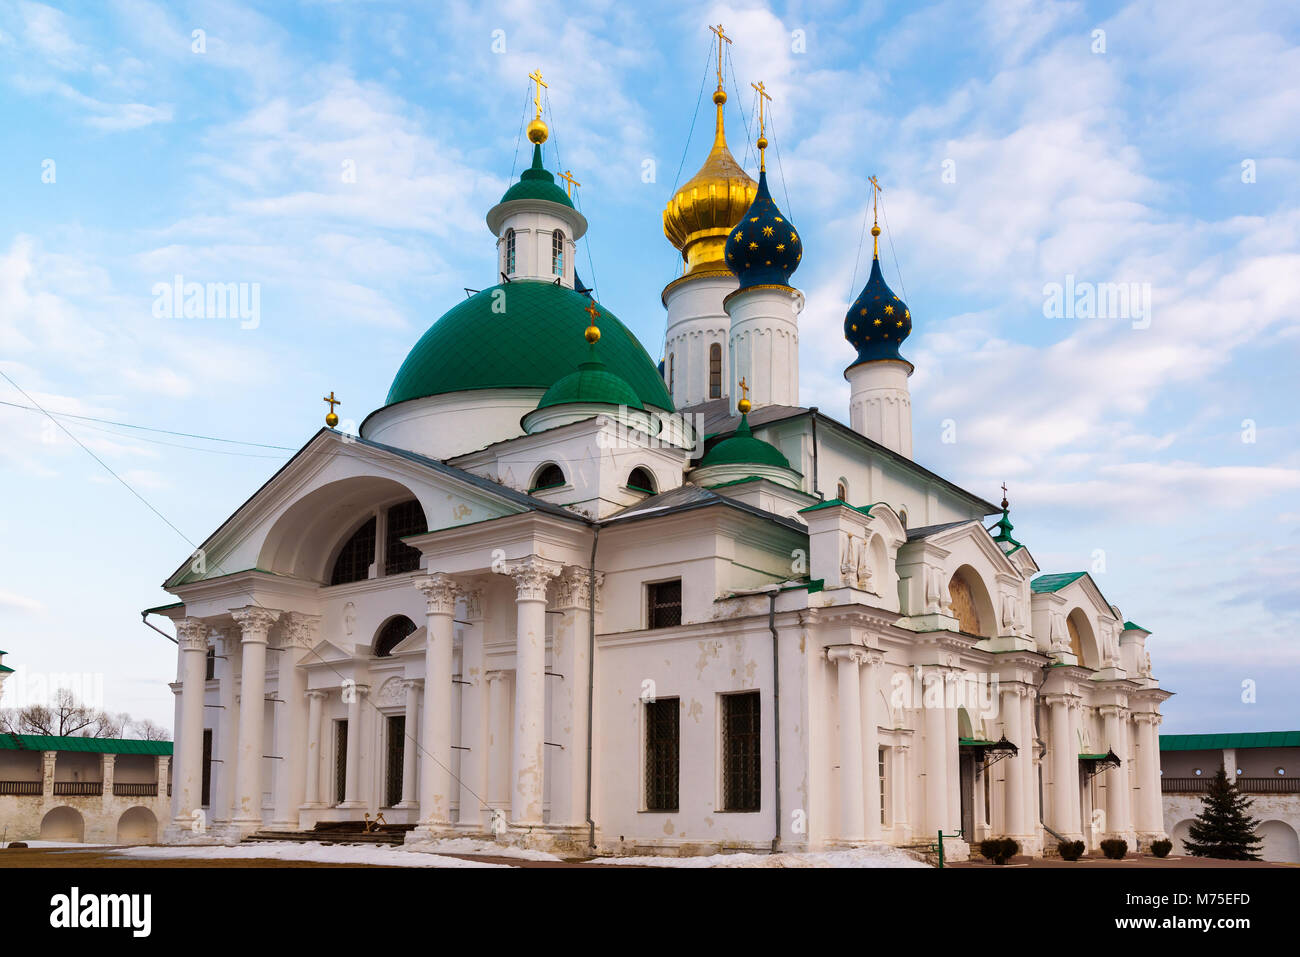 Yakovlevsky cathédrales Maison Spaso dans un monastère de Rostov Veliki, Russie Banque D'Images